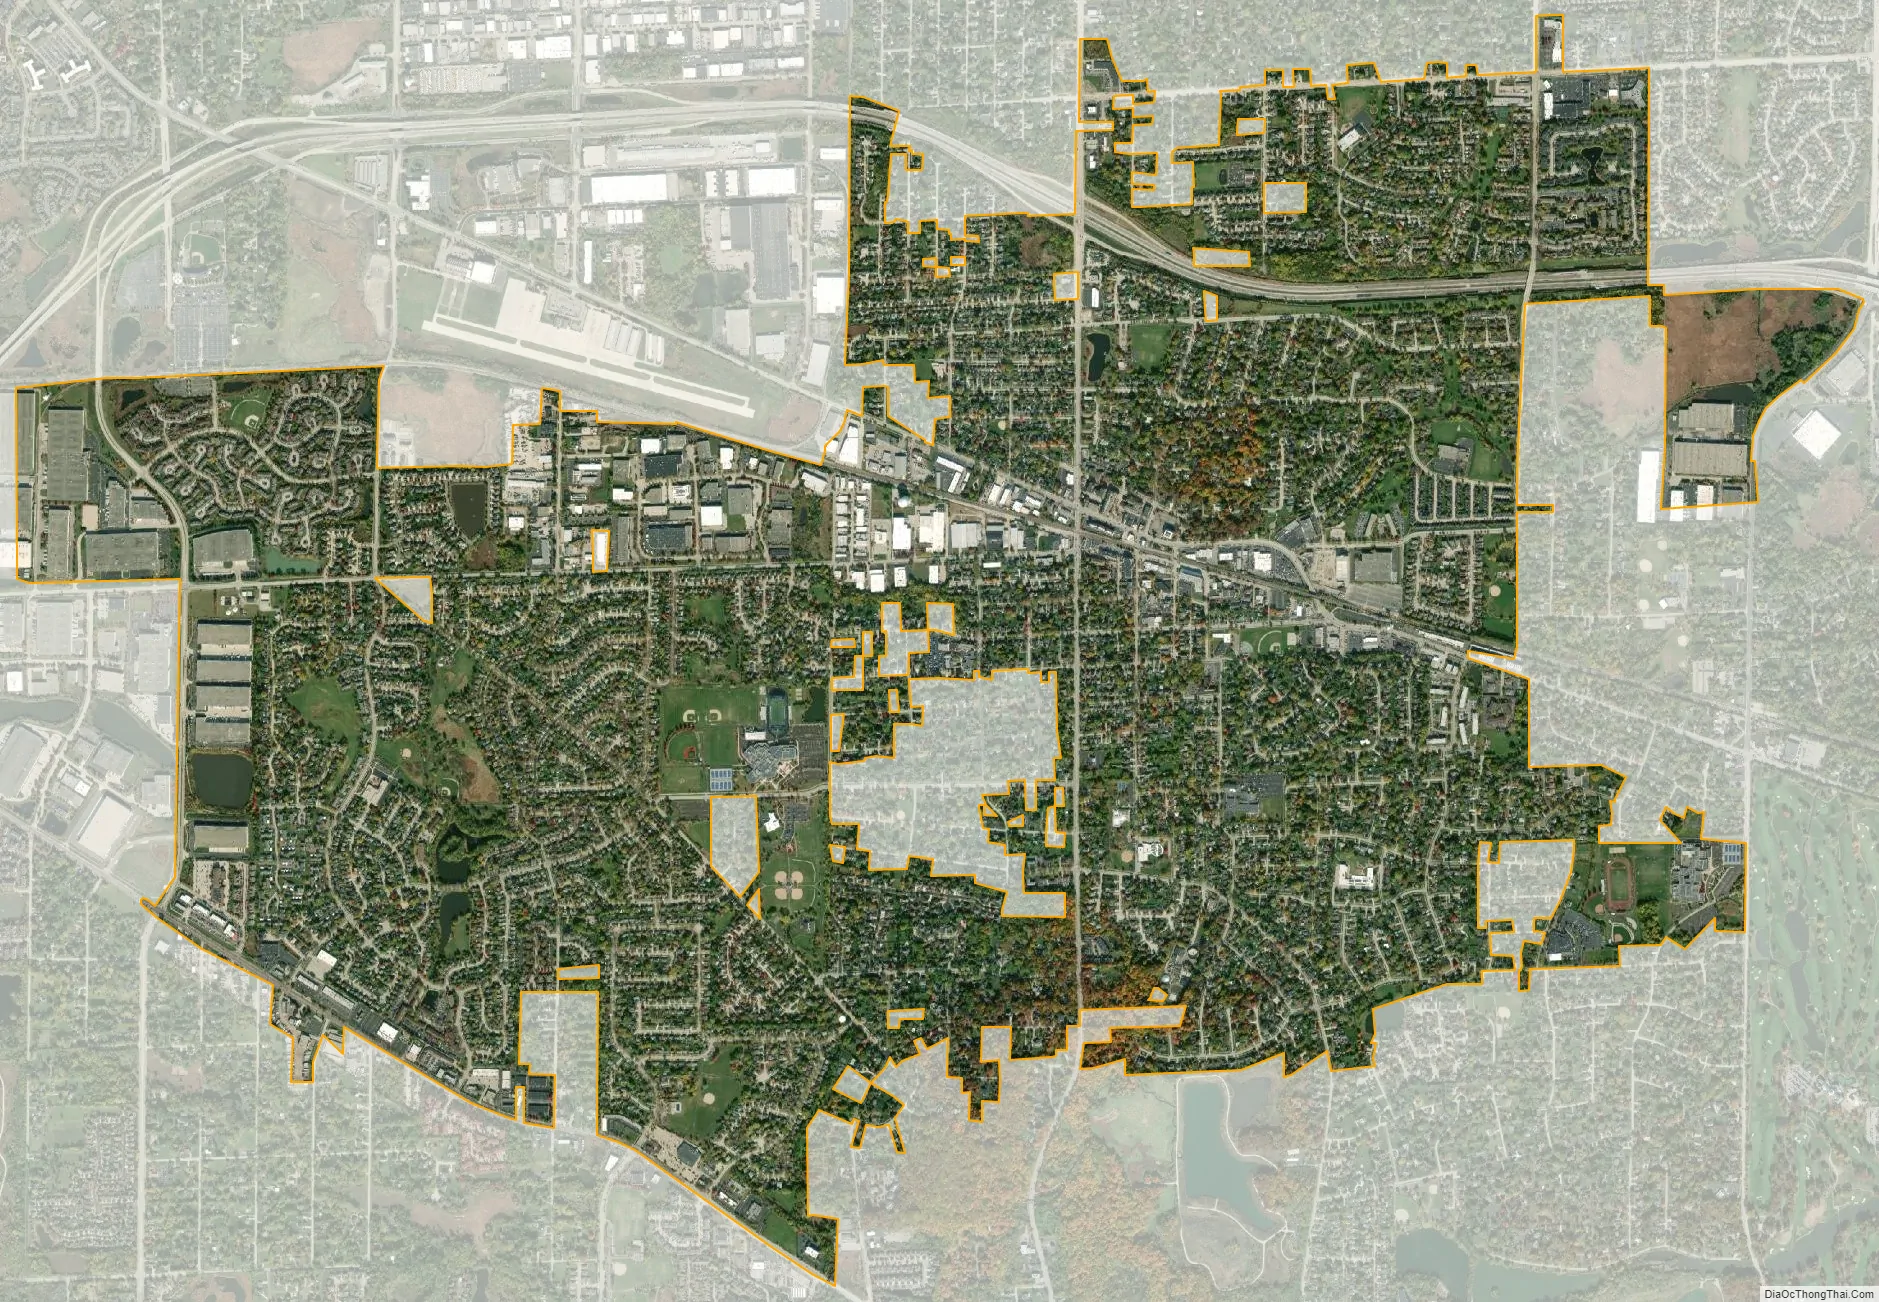 Map of Roselle village, Illinois